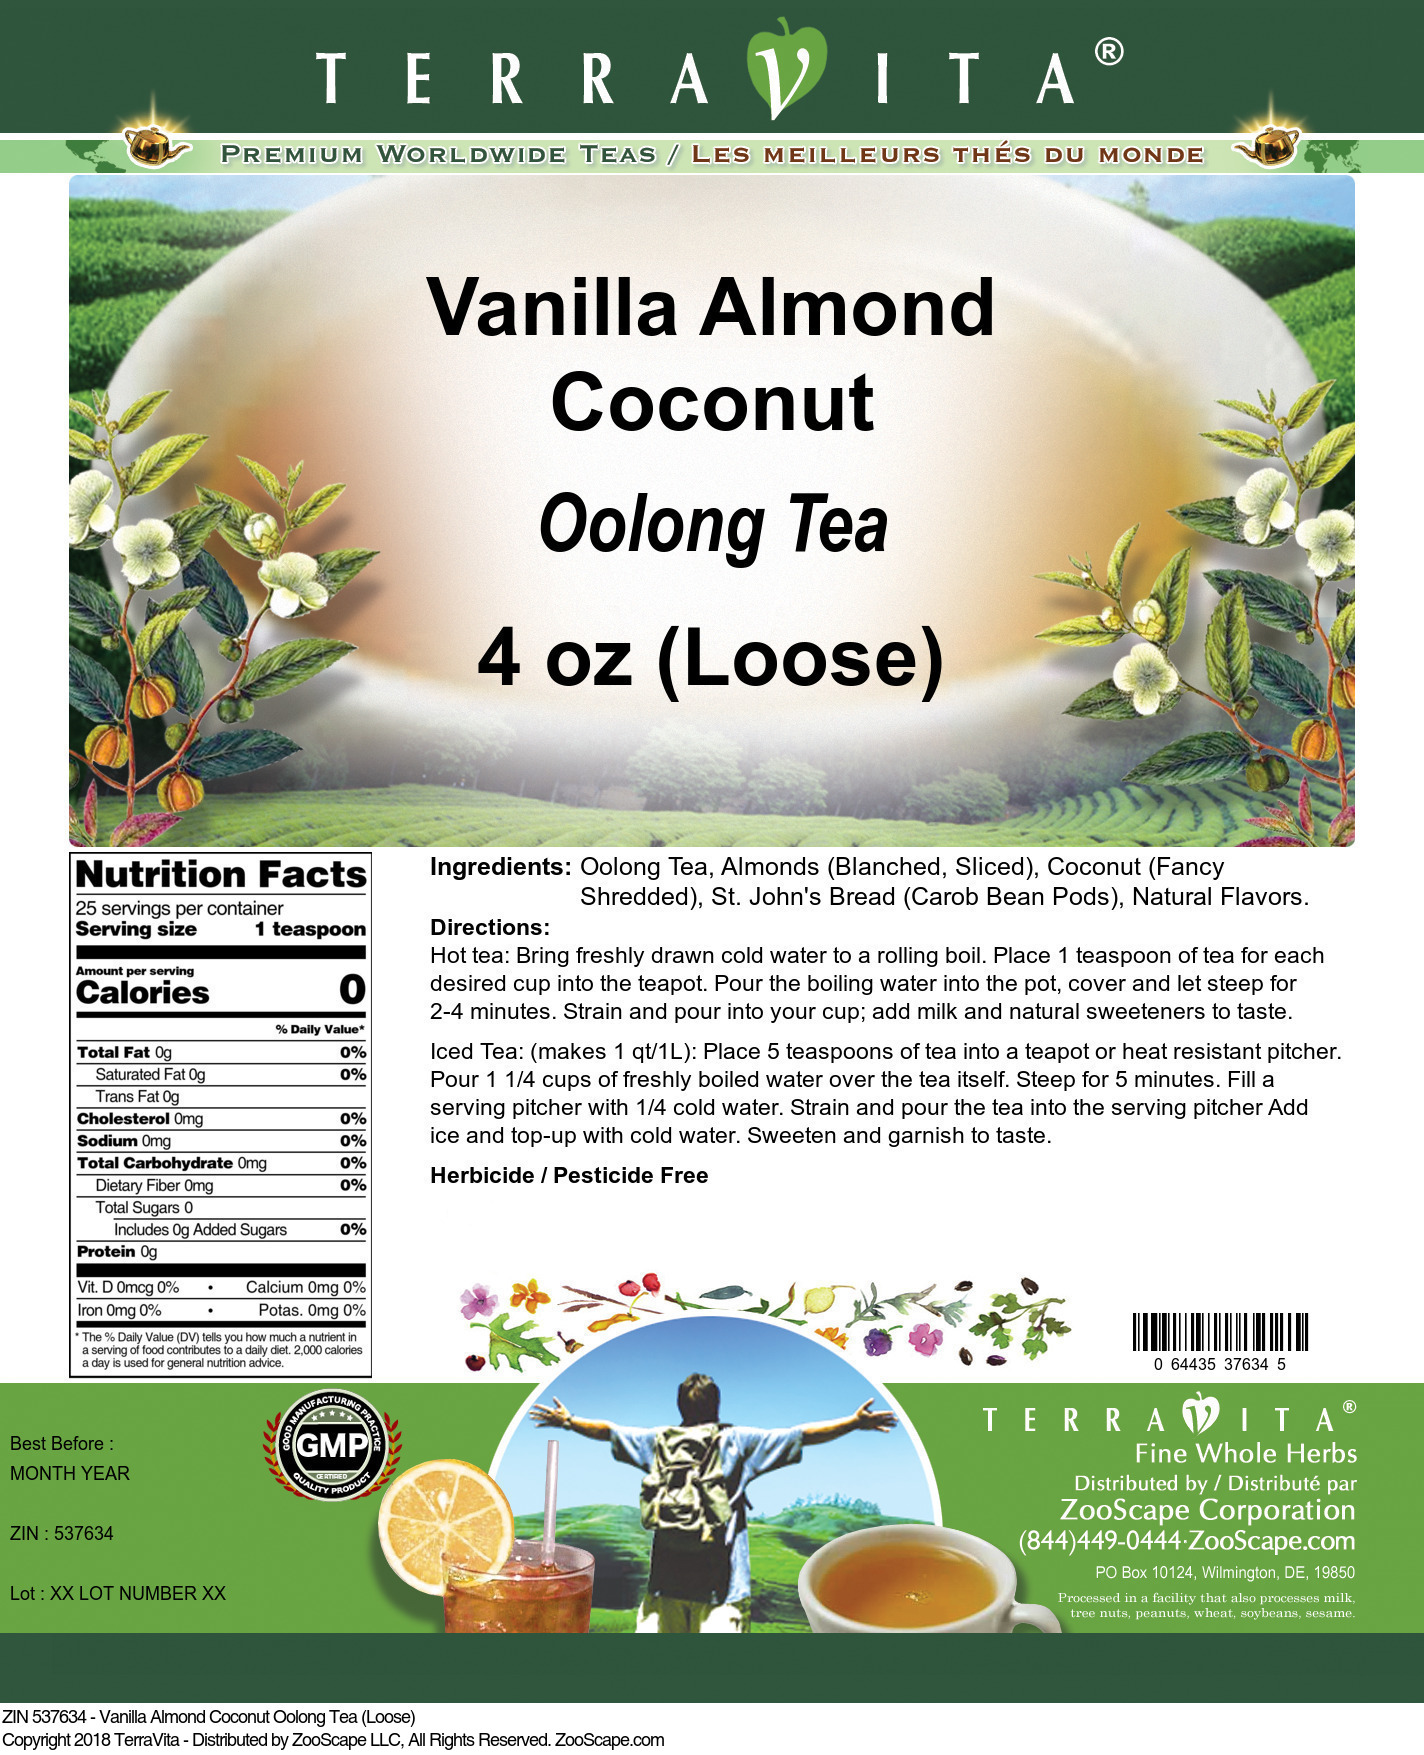 Vanilla Almond Coconut Oolong Tea (Loose) - Label